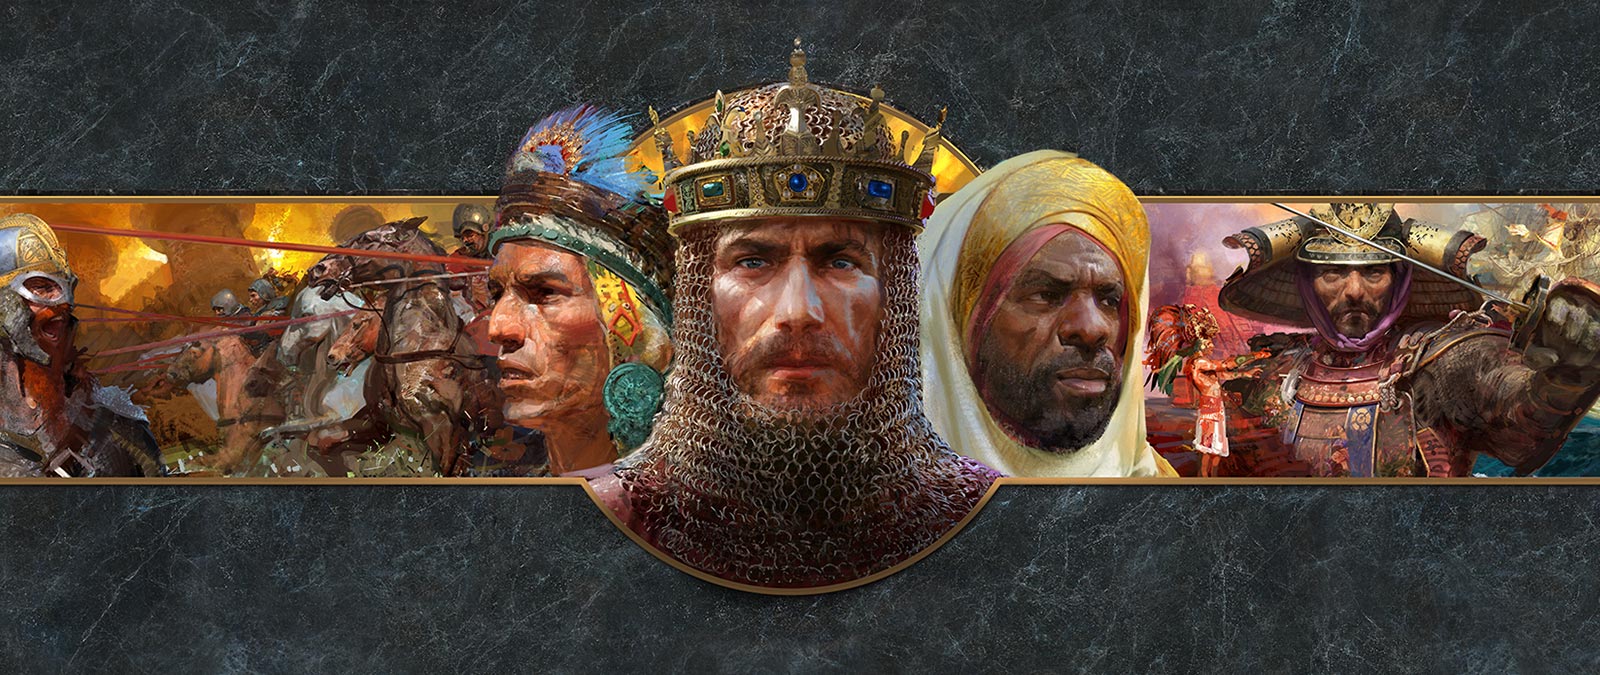 Fotos de rosto de líderes de diferentes civilizações são mostrados na frente de cenas de batalha.